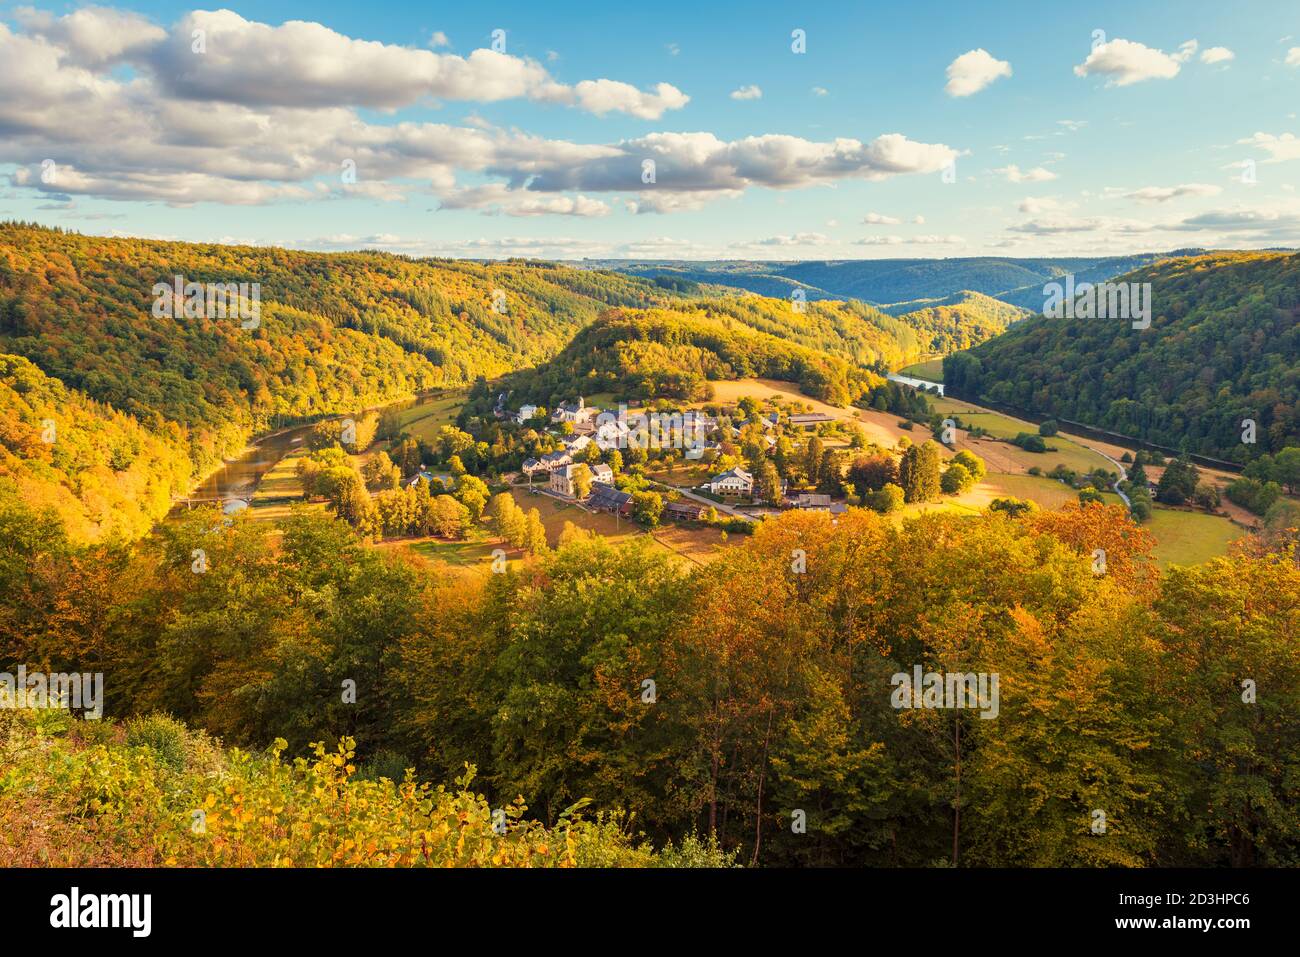 Vue panoramique sur le village de Frahan dans le Province de Luxembourg et région des Ardennes de Wallonie Belgique Banque D'Images